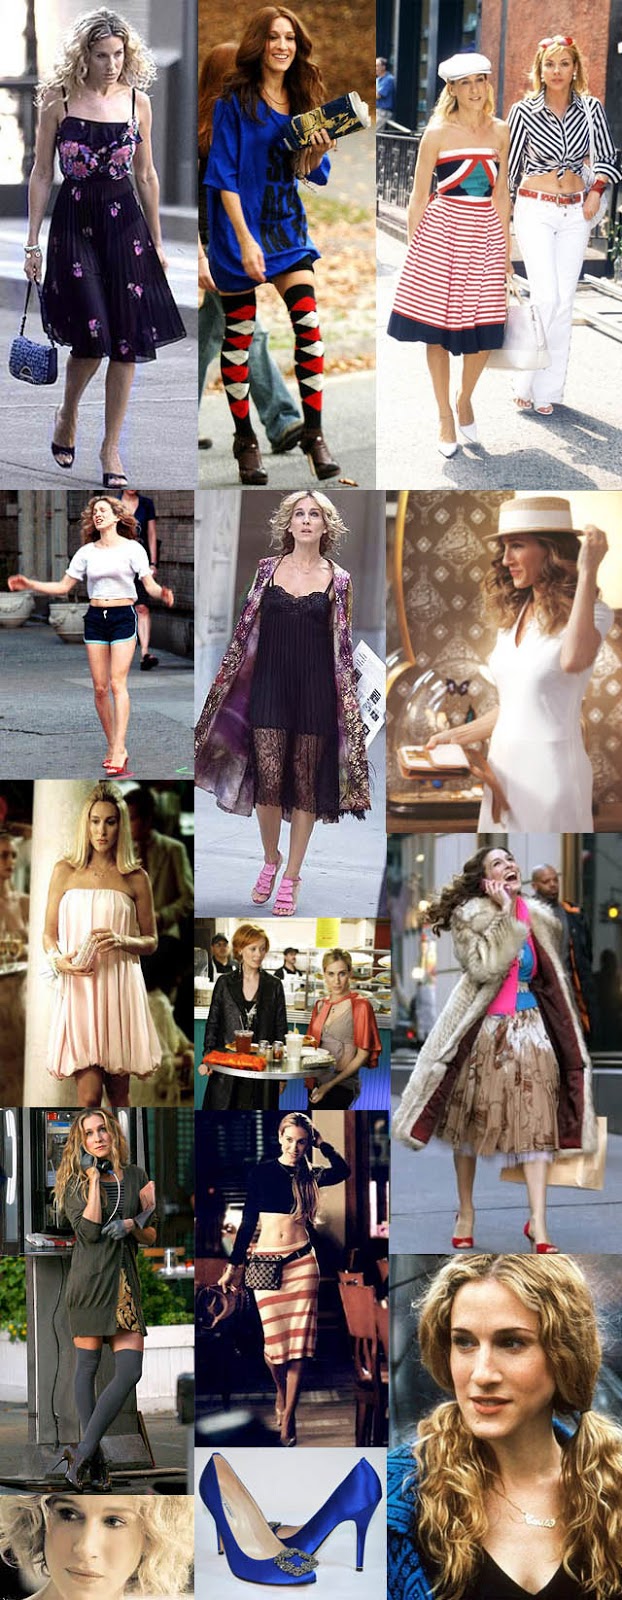 UM ESTILO NOVAIORQUINO_o estilo de Carrie Bradshaw_streestyle_sex and the city_musa do mês_nova york_NY style_moda